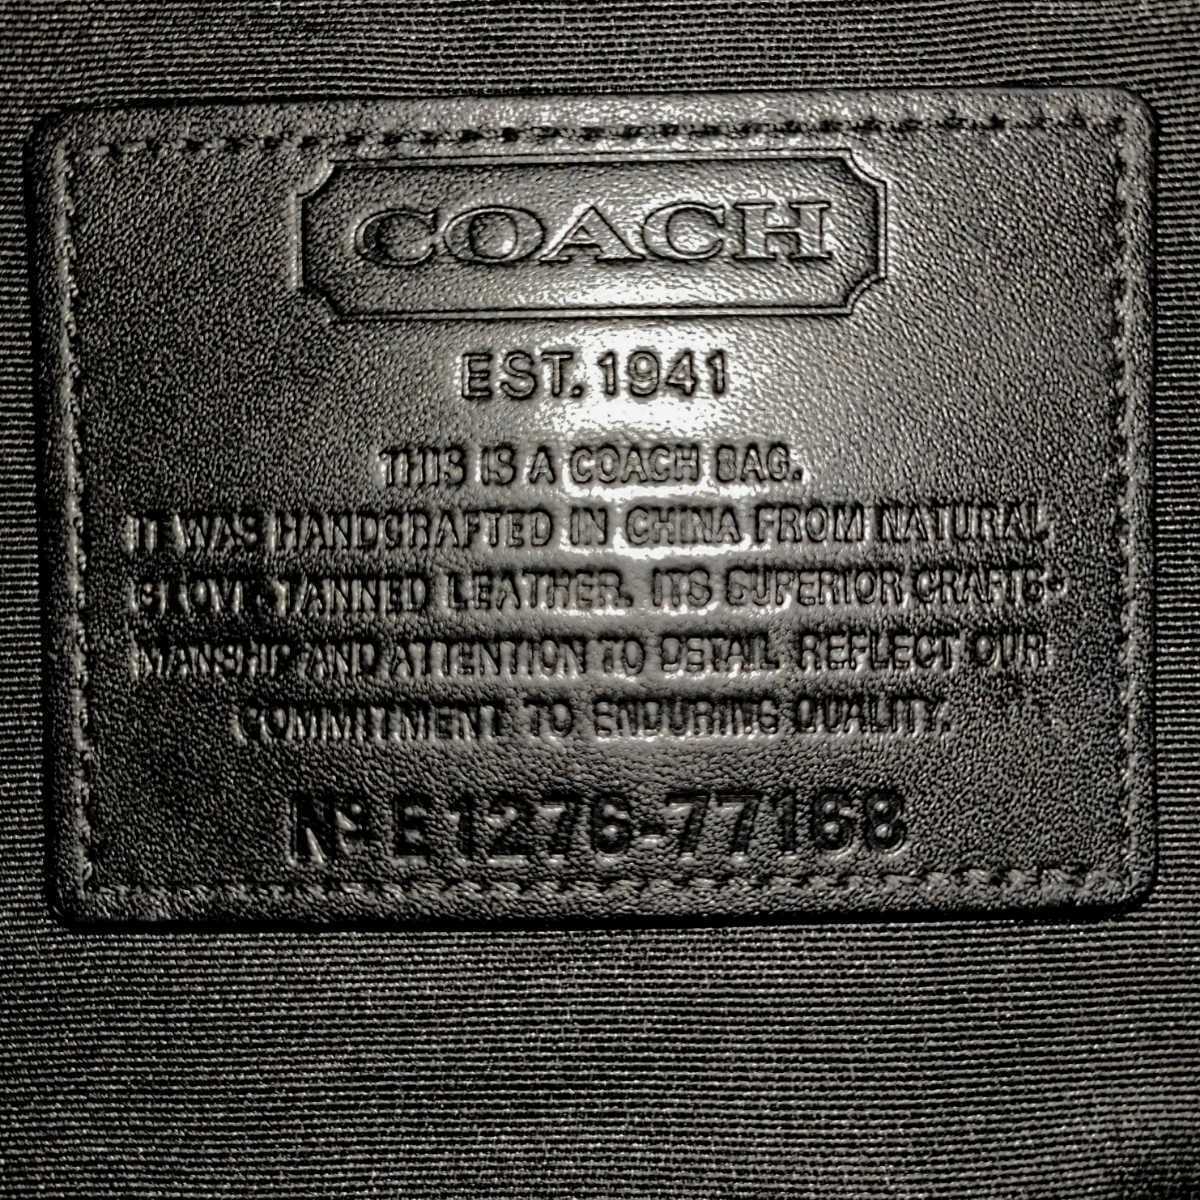 送料無料 美品 COACH コーチ メンズ ボストンバッグ トランス アトランティック レザー ボストンバッグ 77168 ブラック 旅行 大容量